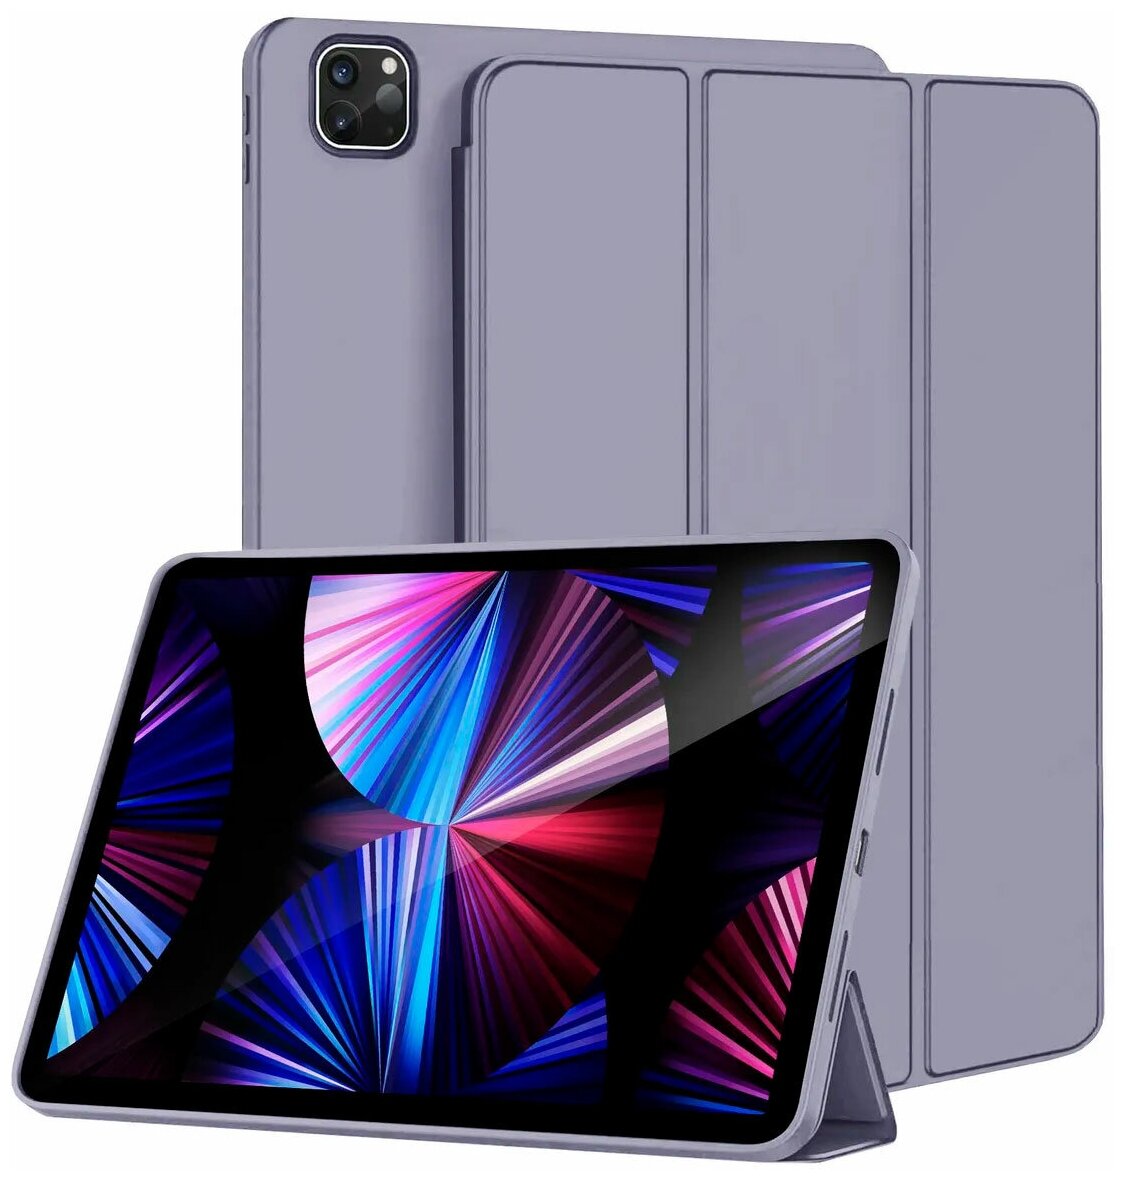 Чехол для планшета Apple iPad Pro 11 (2021) / iPad Pro 11 (2020) из мягкого силикона трансформируется в подставку